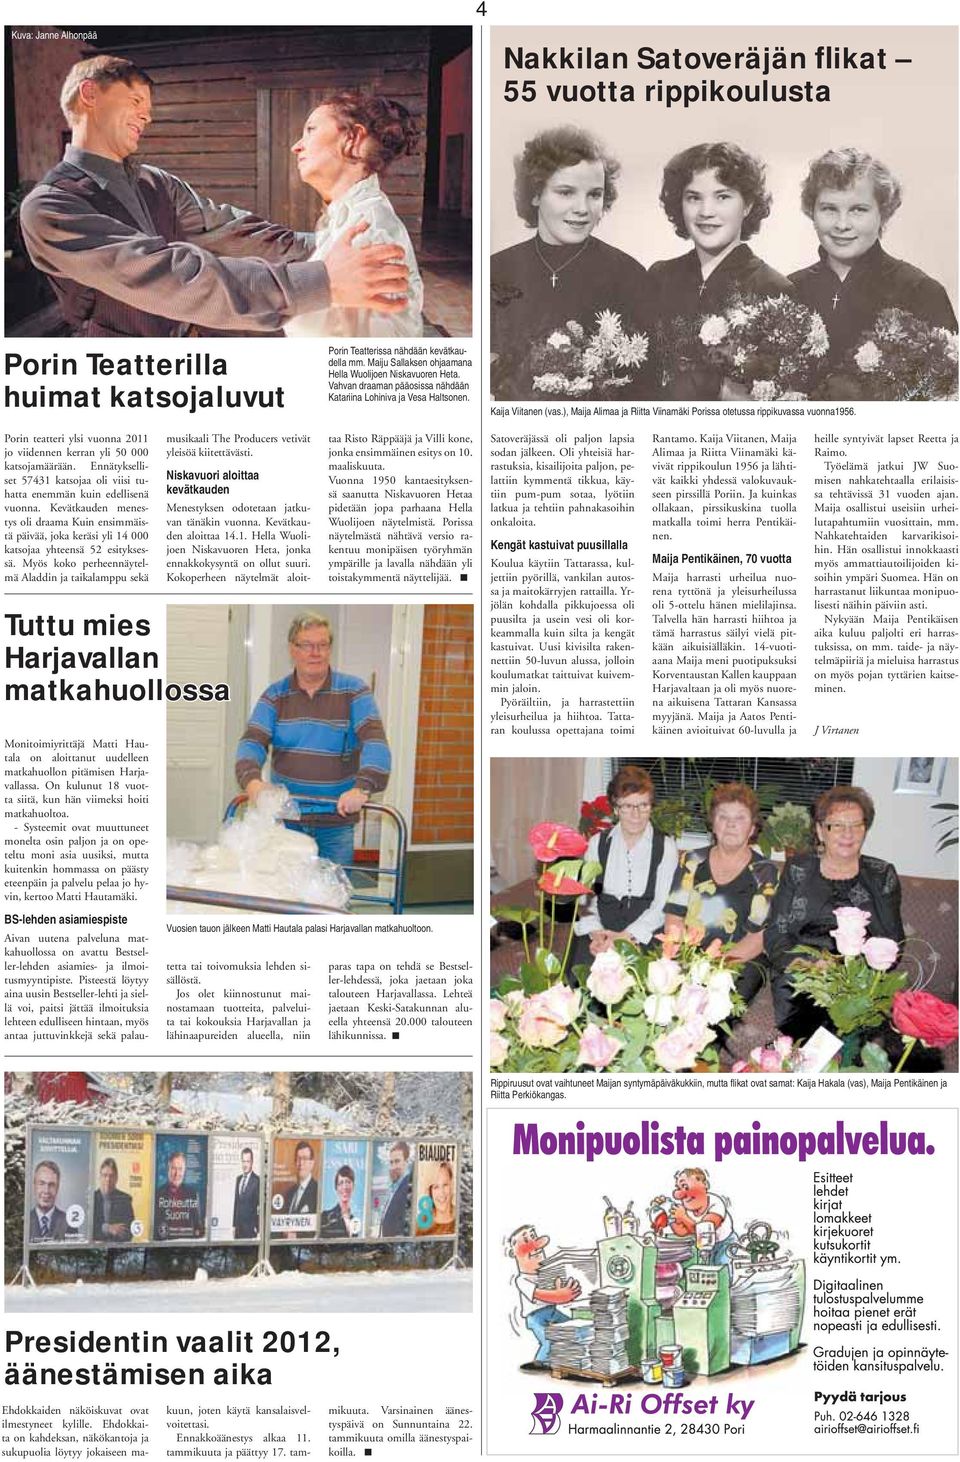 ), Maija Alimaa ja Riitta Viinamäki Porissa otetussa rippikuvassa vuonna1956. heille syntyivät lapset Reetta ja Raimo. Työelämä jatkui JW Suomisen nahkatehtaalla erilaisissa tehtävissä 31 vuoden ajan.